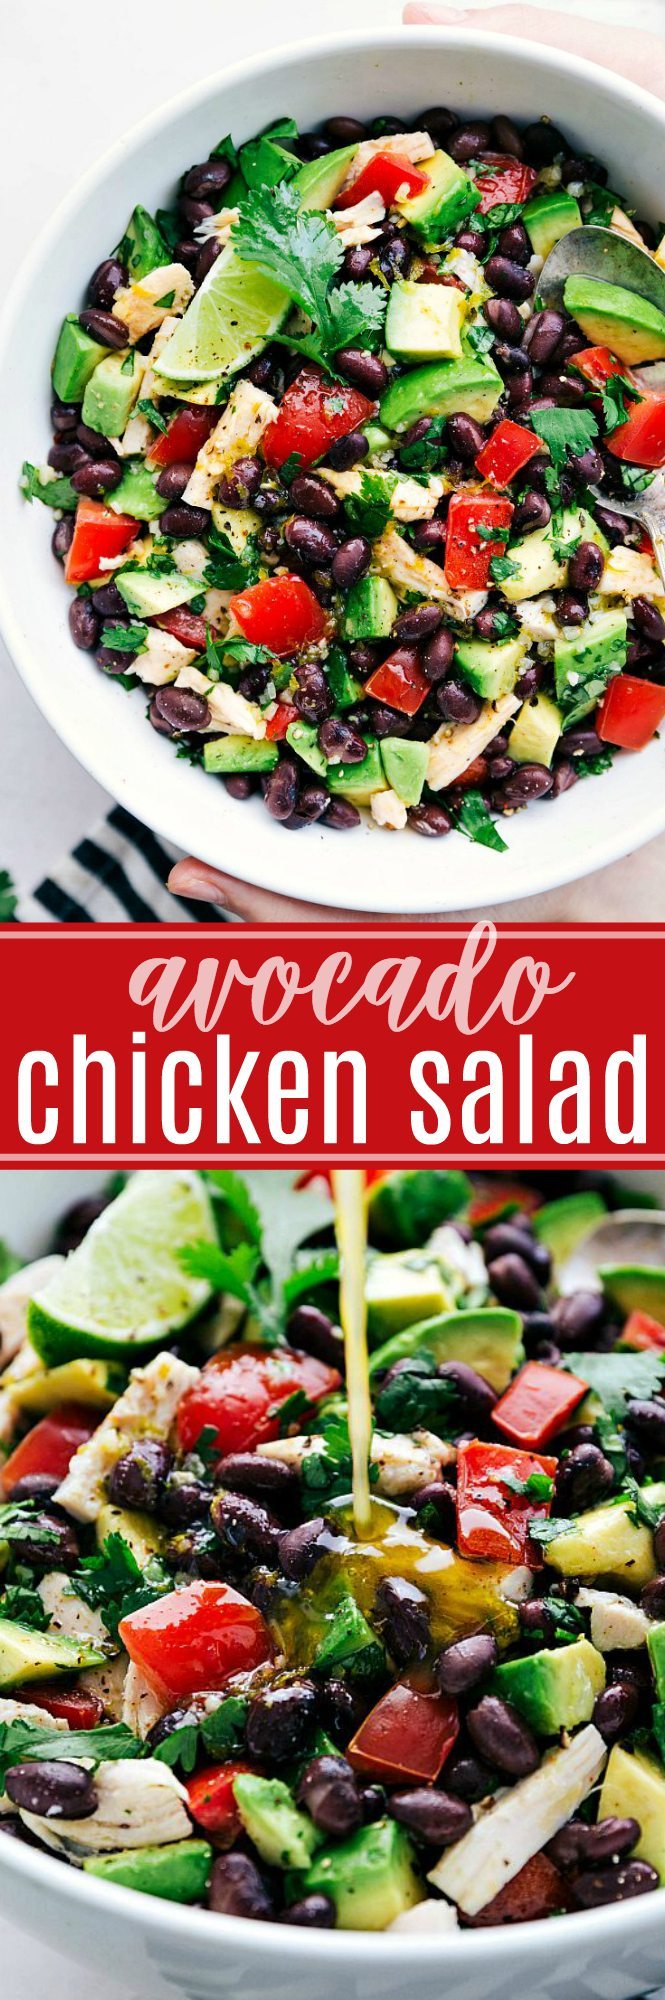 Easy, healthy, and SO delicious Mexican flavor inspired Avocado Chicken Salad! via chelseasmessyapron.com #healthy #salad #chicken #quick #easy #kidfriendly #avocado #tomato #cilantro #lime #cleaneating #keto #health #salad